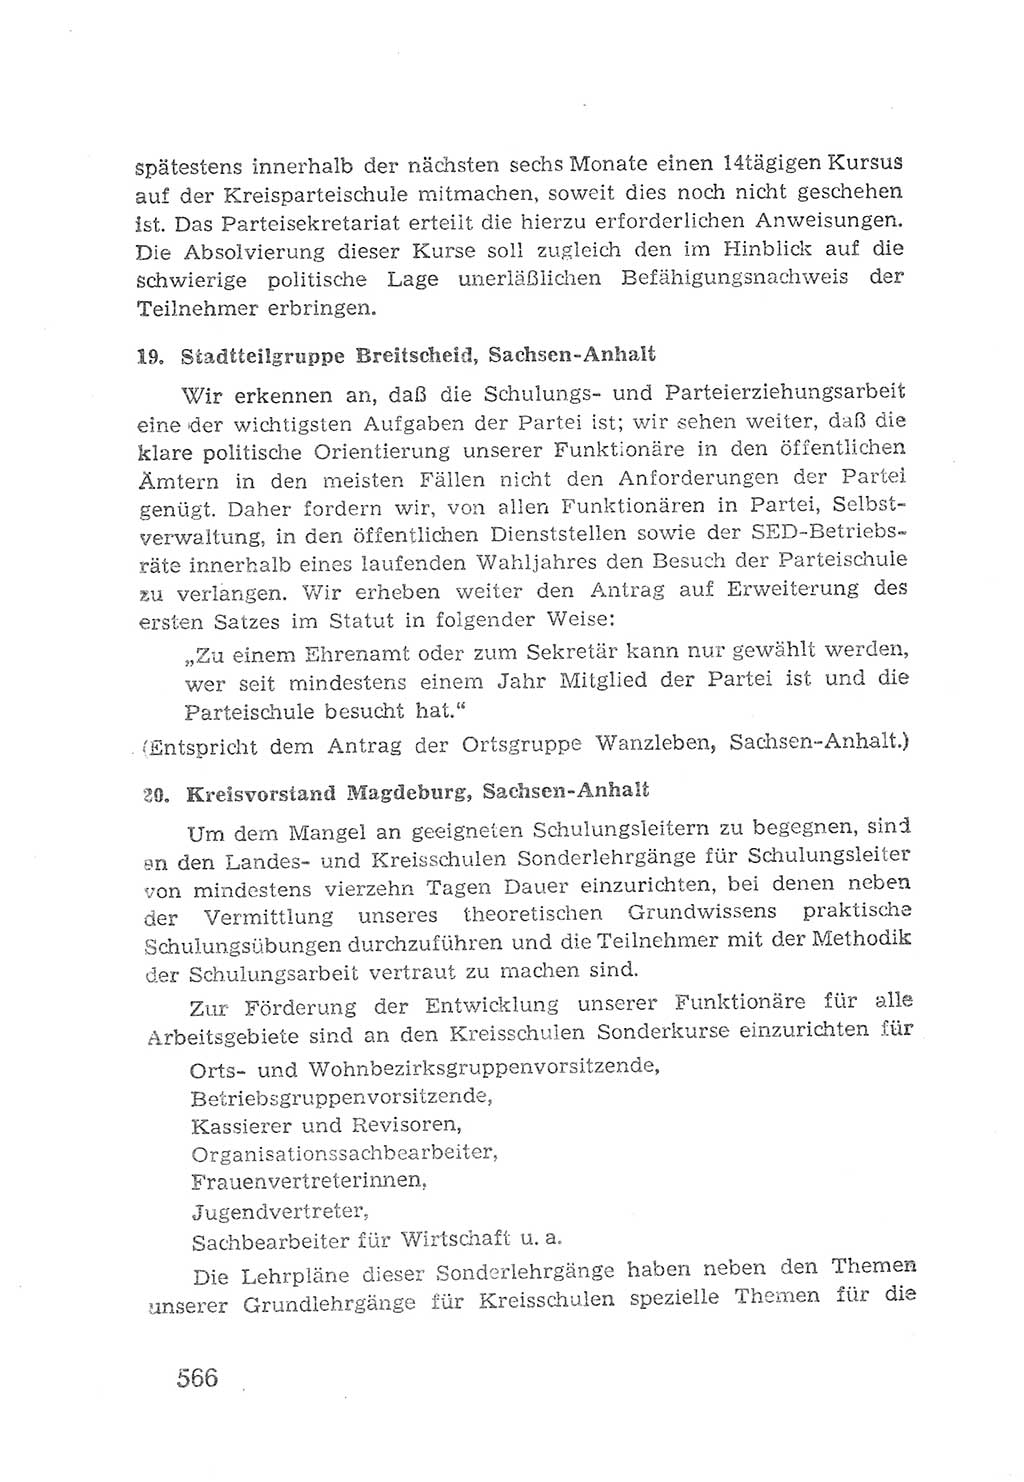 Protokoll der Verhandlungen des 2. Parteitages der Sozialistischen Einheitspartei Deutschlands (SED) [Sowjetische Besatzungszone (SBZ) Deutschlands] 1947, Seite 566 (Prot. Verh. 2. PT SED SBZ Dtl. 1947, S. 566)